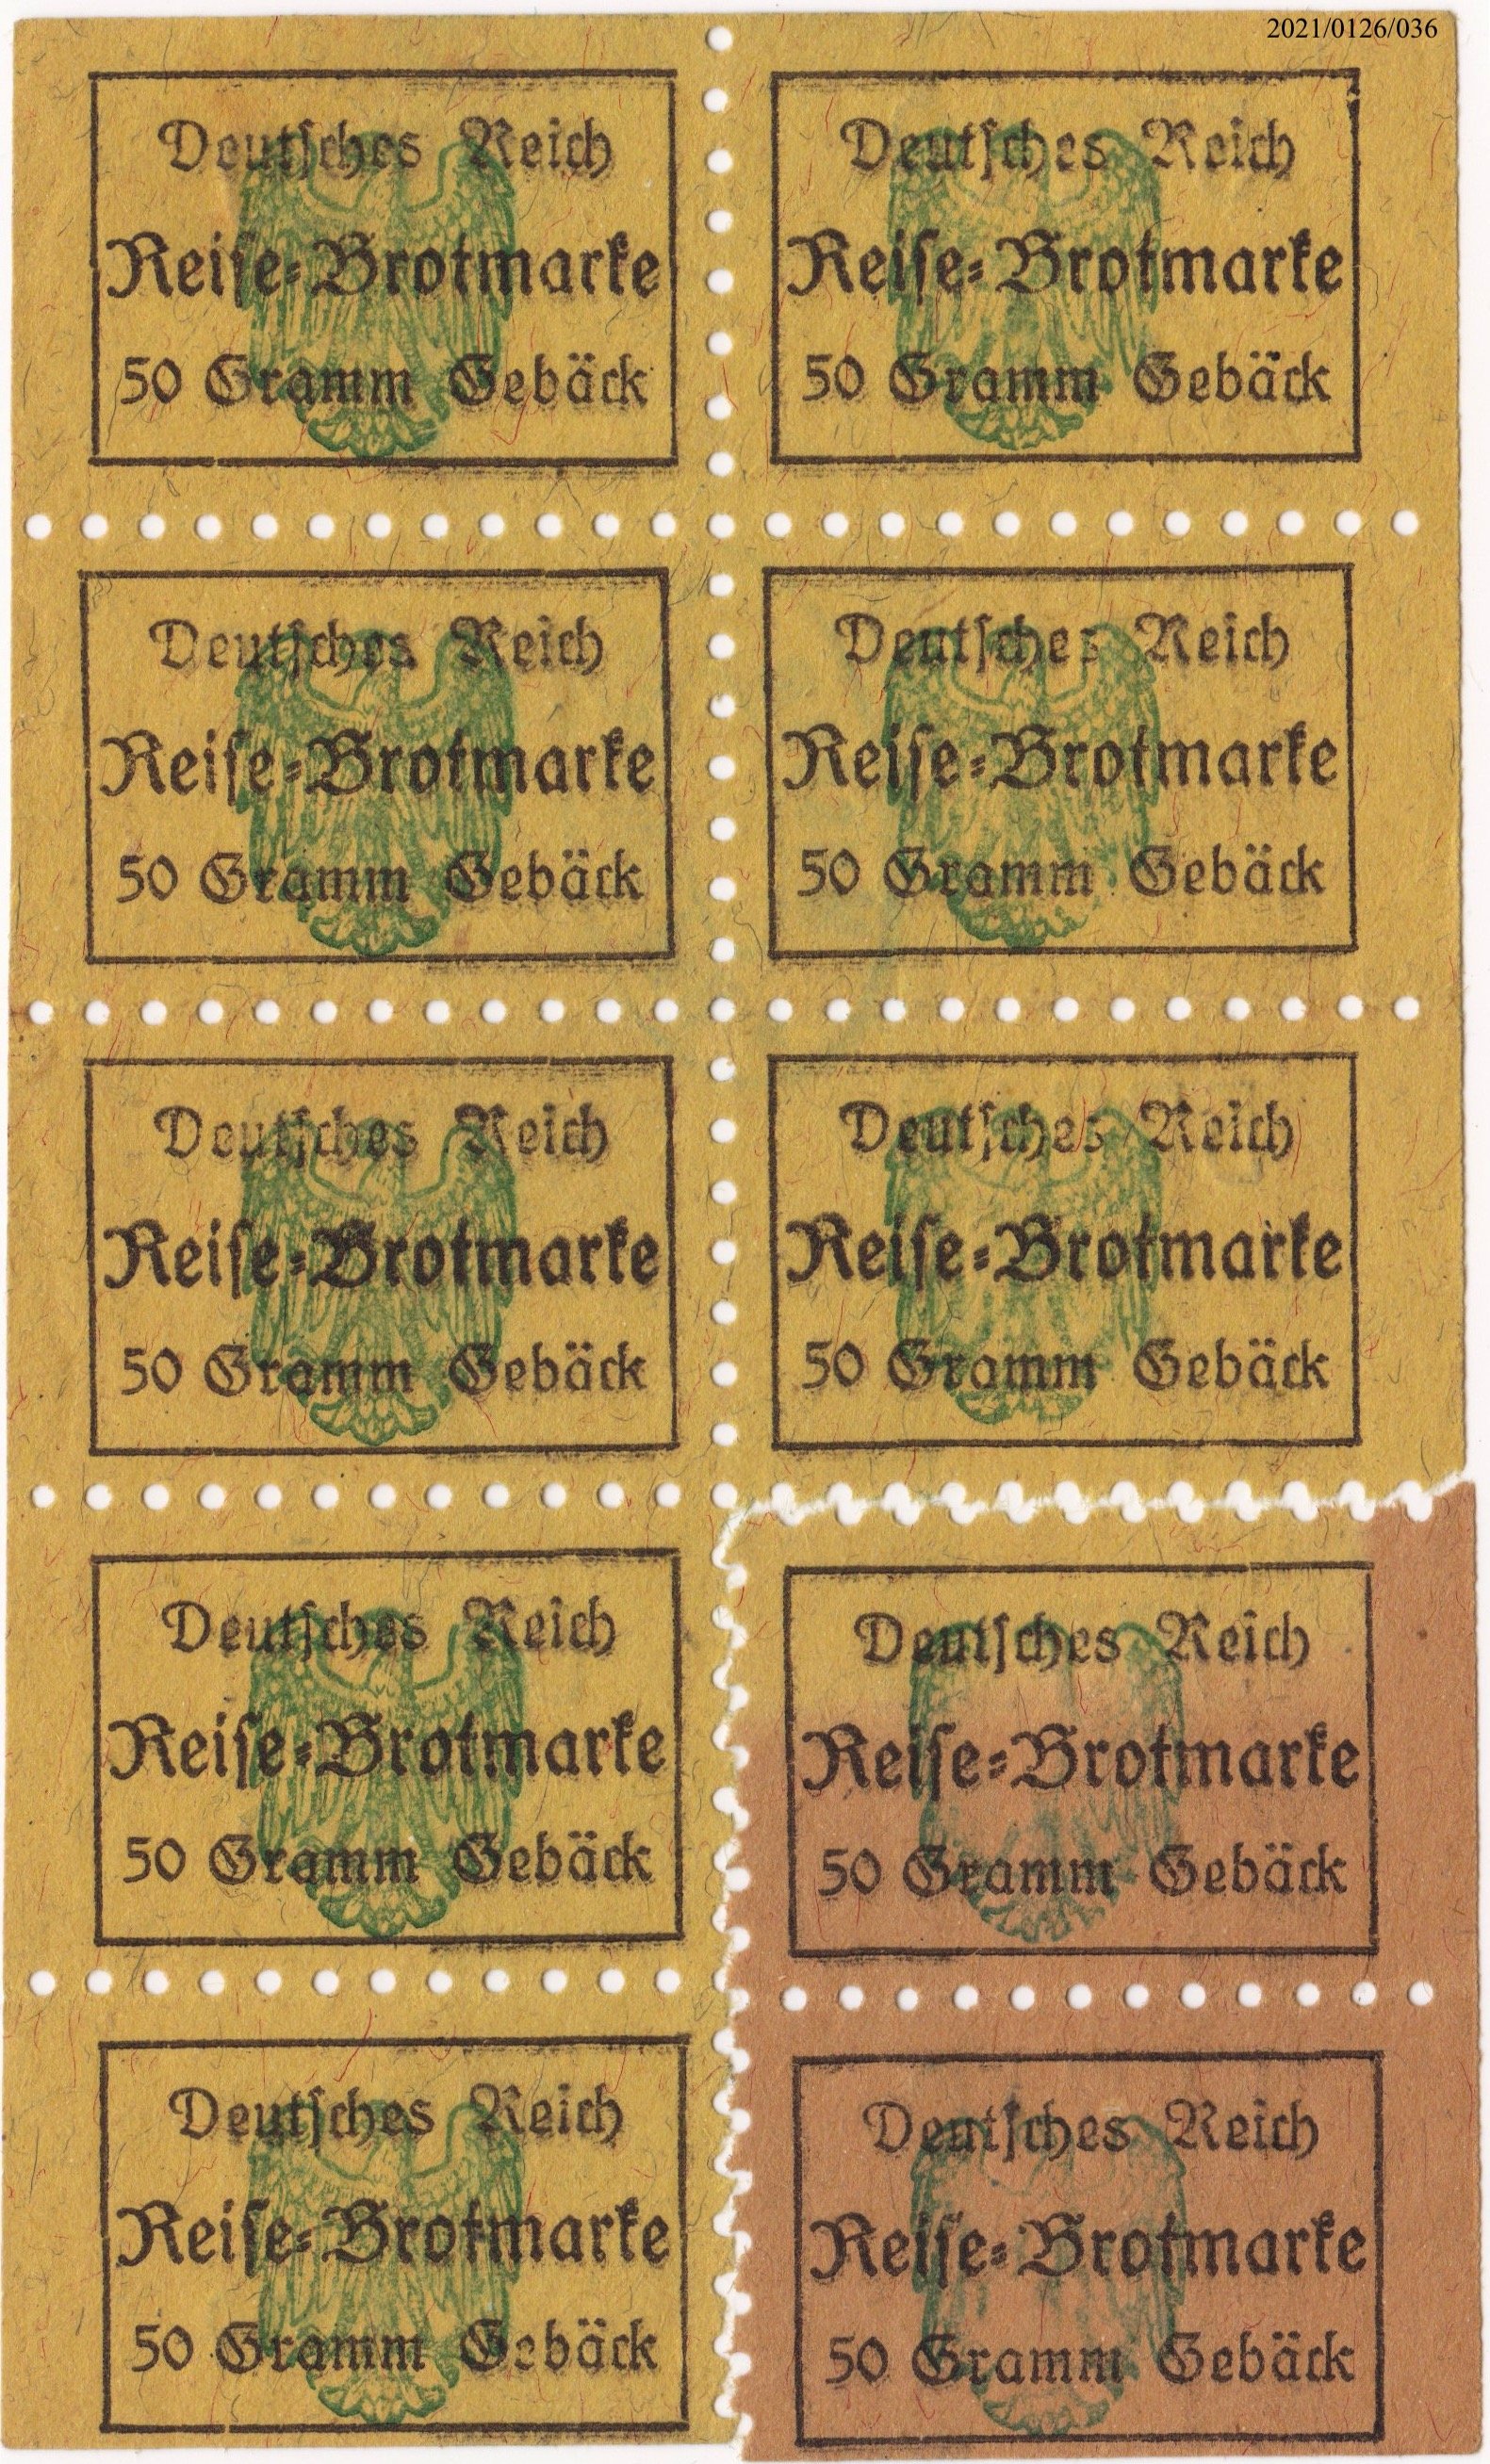 Reise-Brotmarke Deutsches Reich 50g Gebäck (Museumsgesellschaft Bad Dürkheim e. V. CC BY-NC-SA)